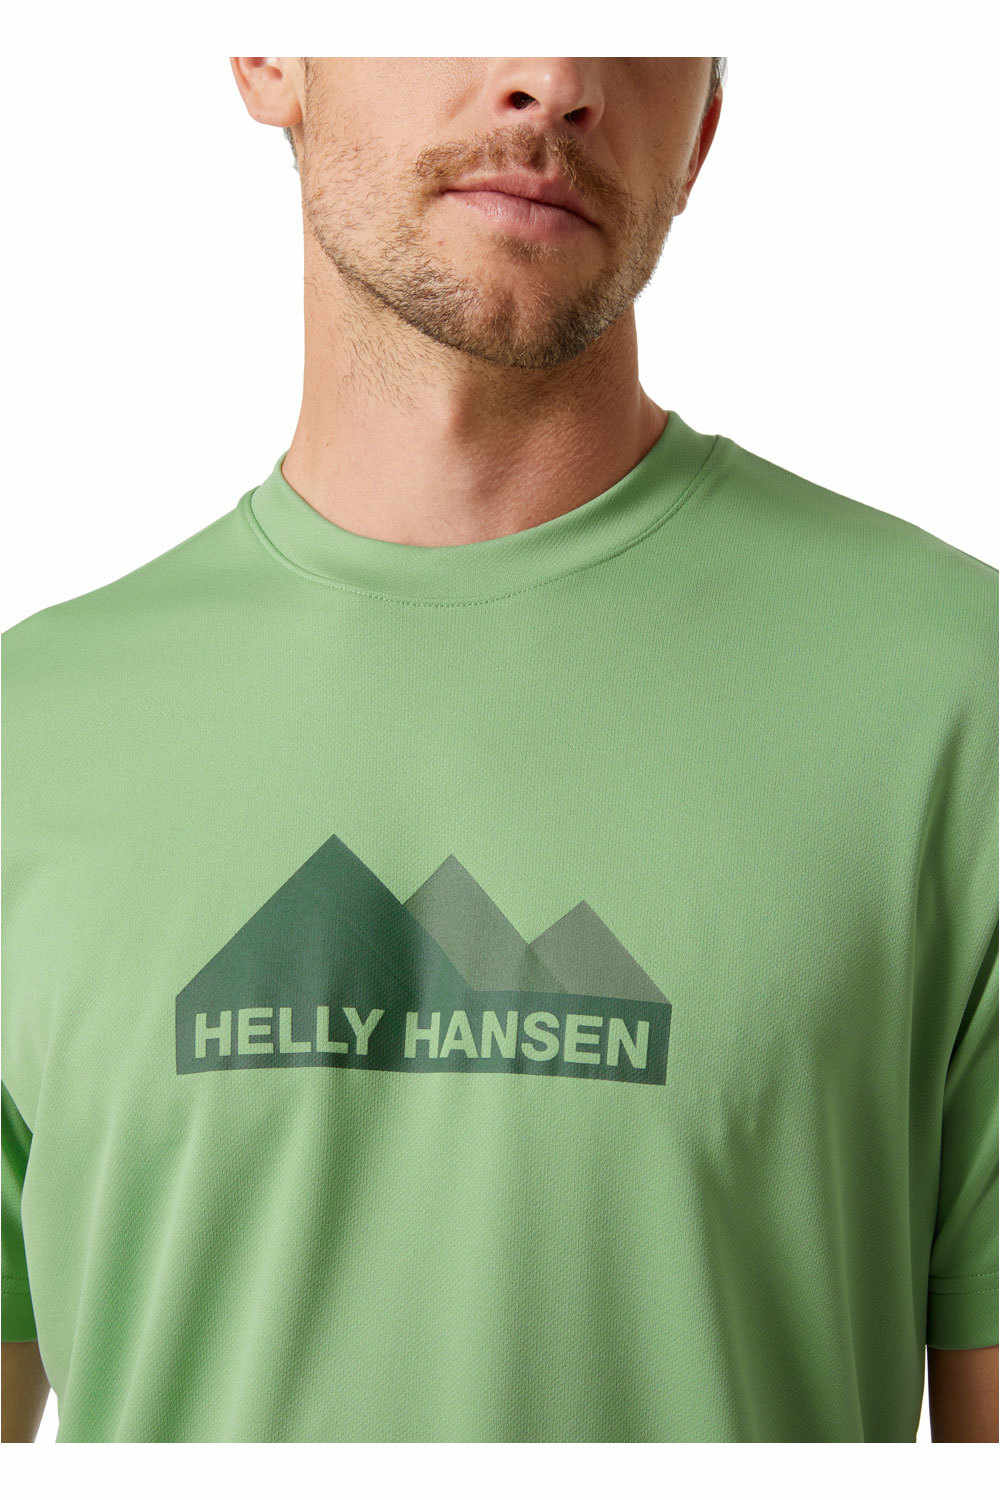 Helly Hansen camiseta montaña manga corta hombre HH TECH GRAPHIC T-SHIRT vista detalle